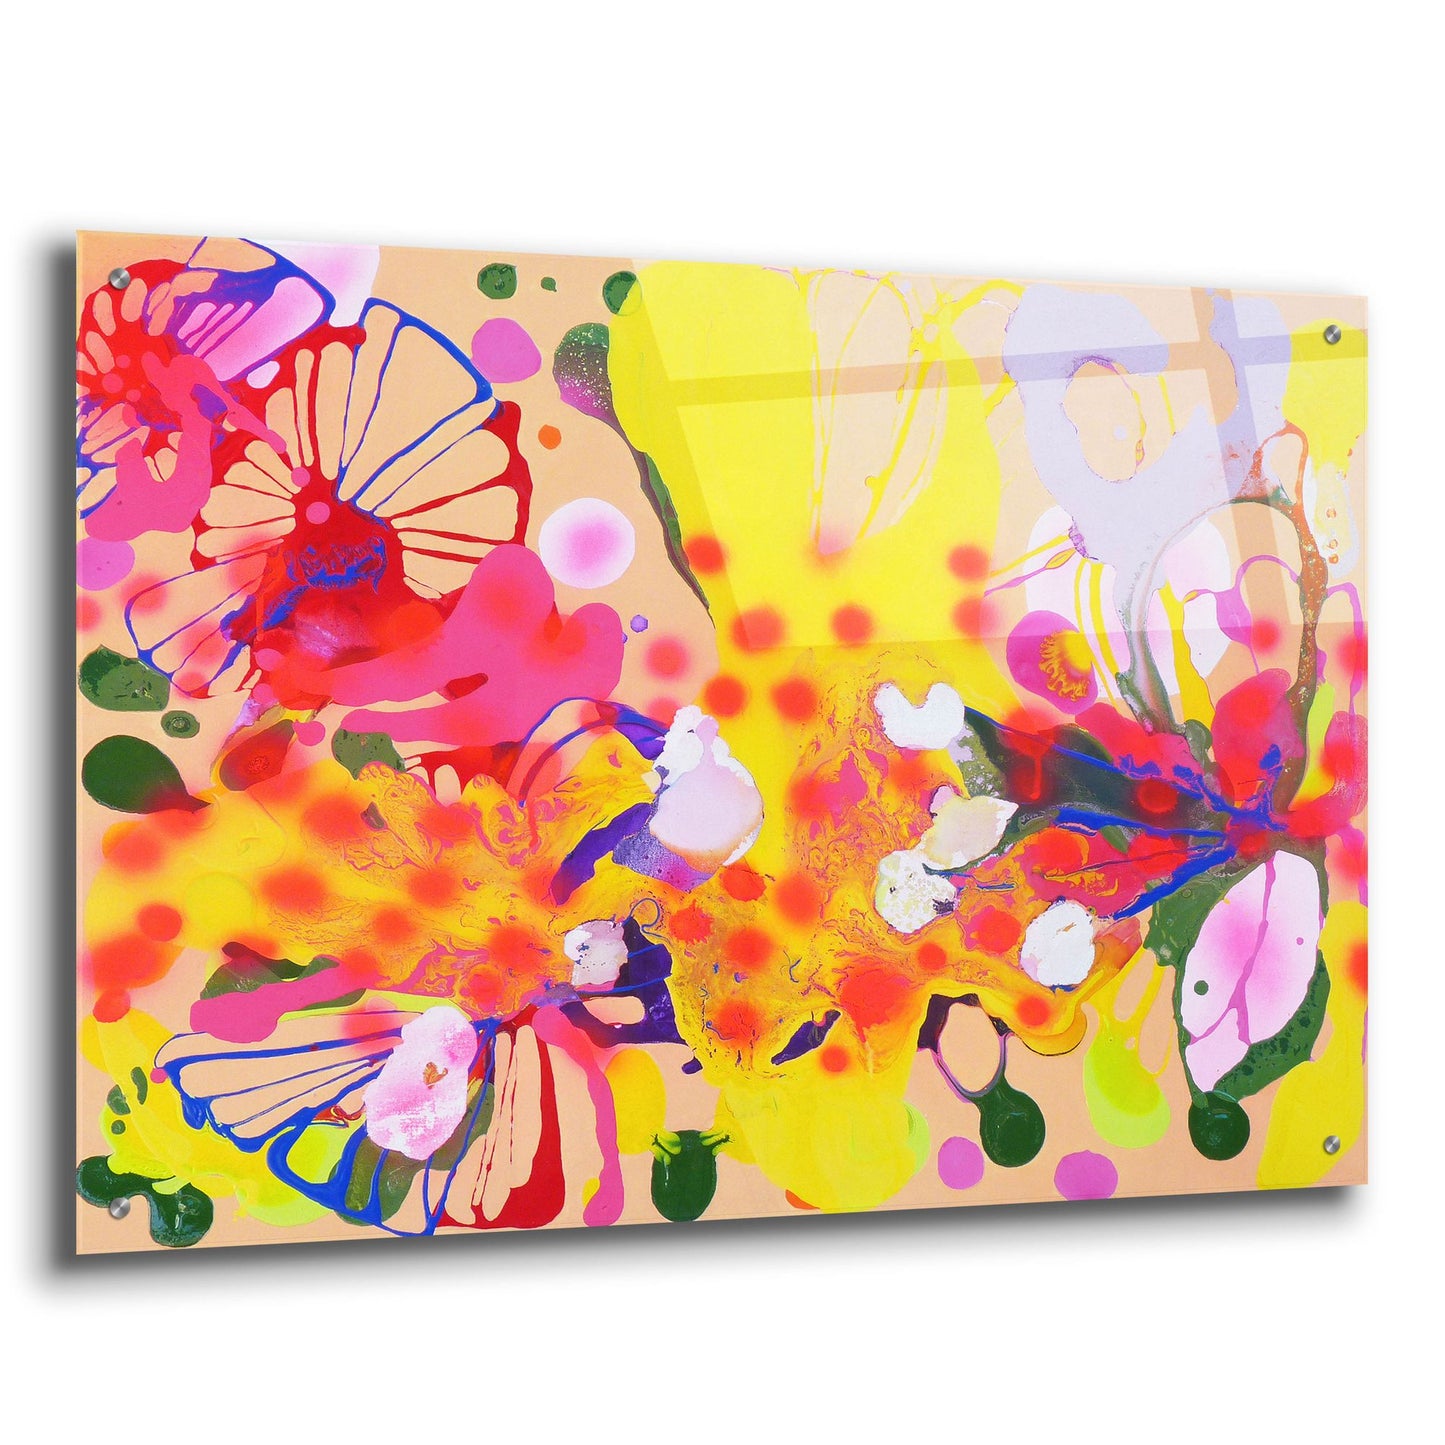 Epic Art ' Lola Fiesta' by Sofie Siegmann, Acrylic Glass Wall Art,36x24